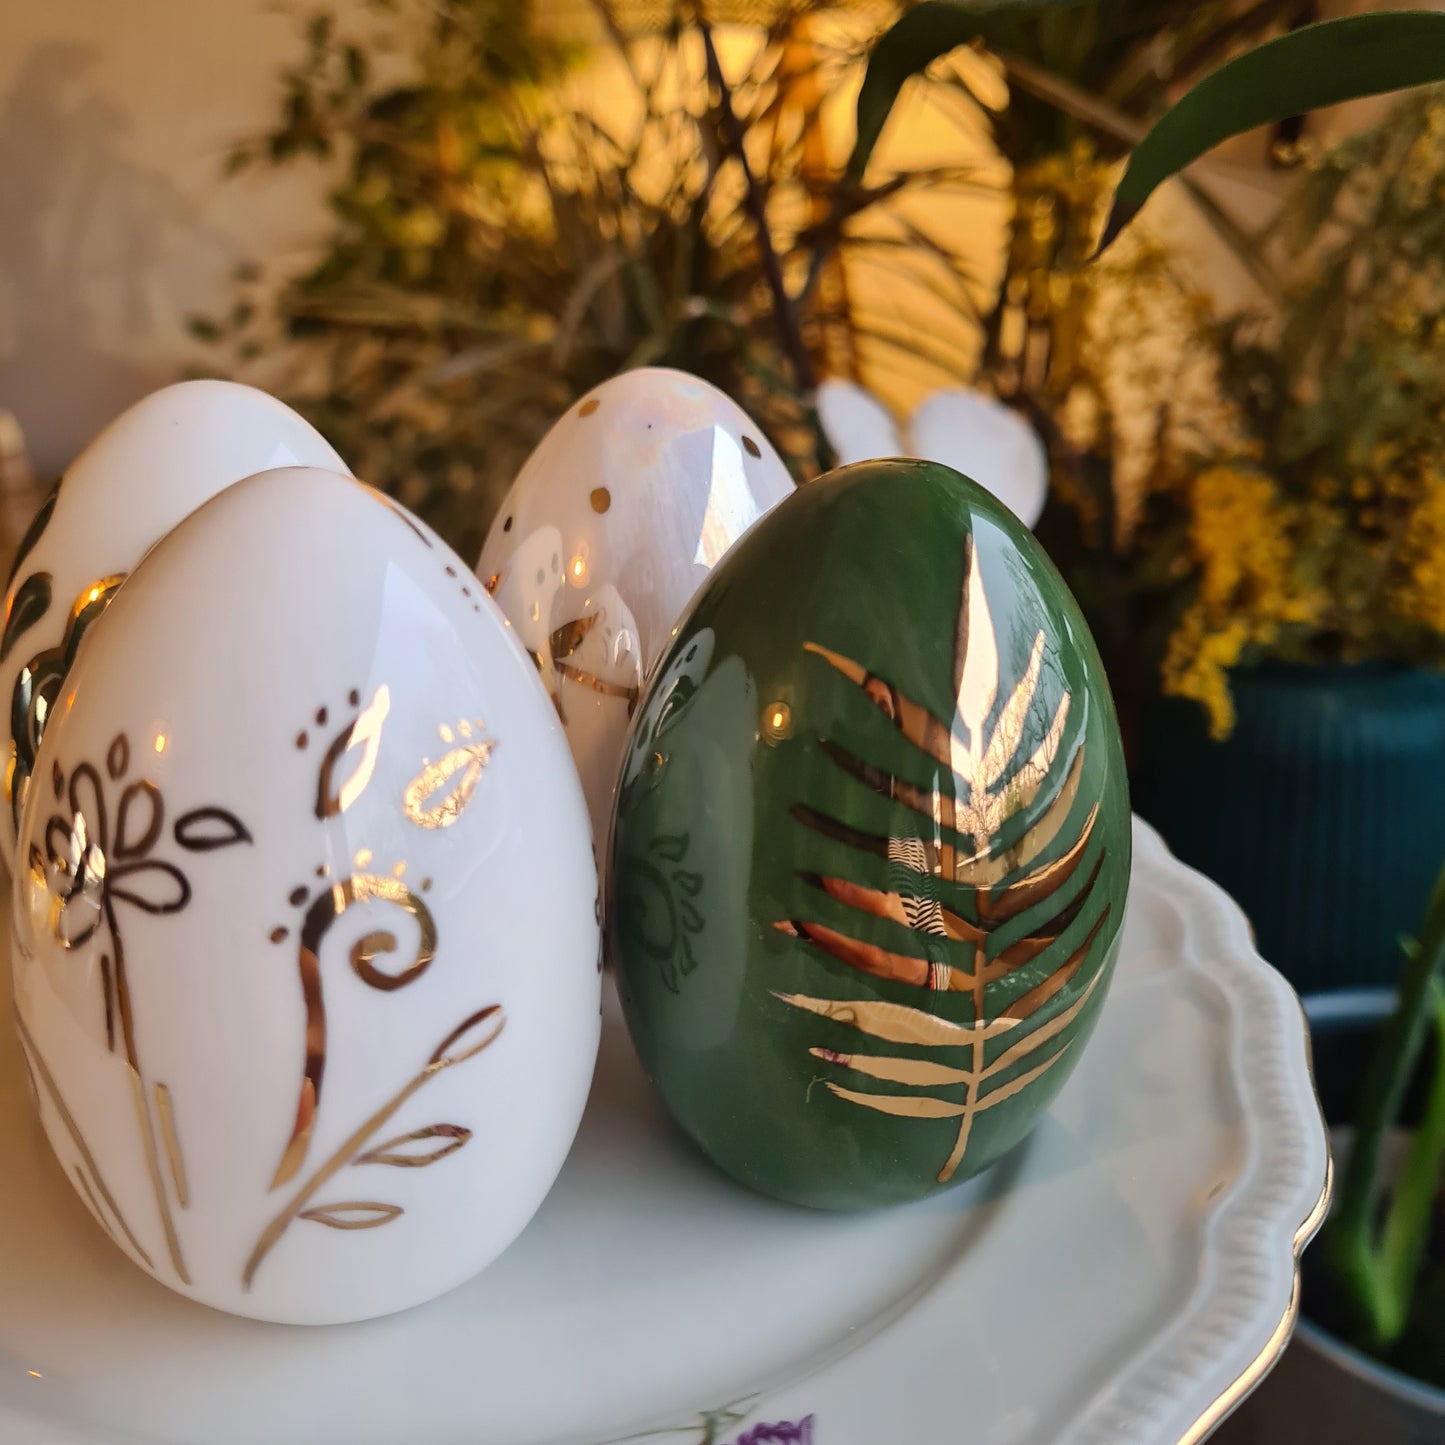 Set of 4 Handmade Ceramic Eggs, Sabz